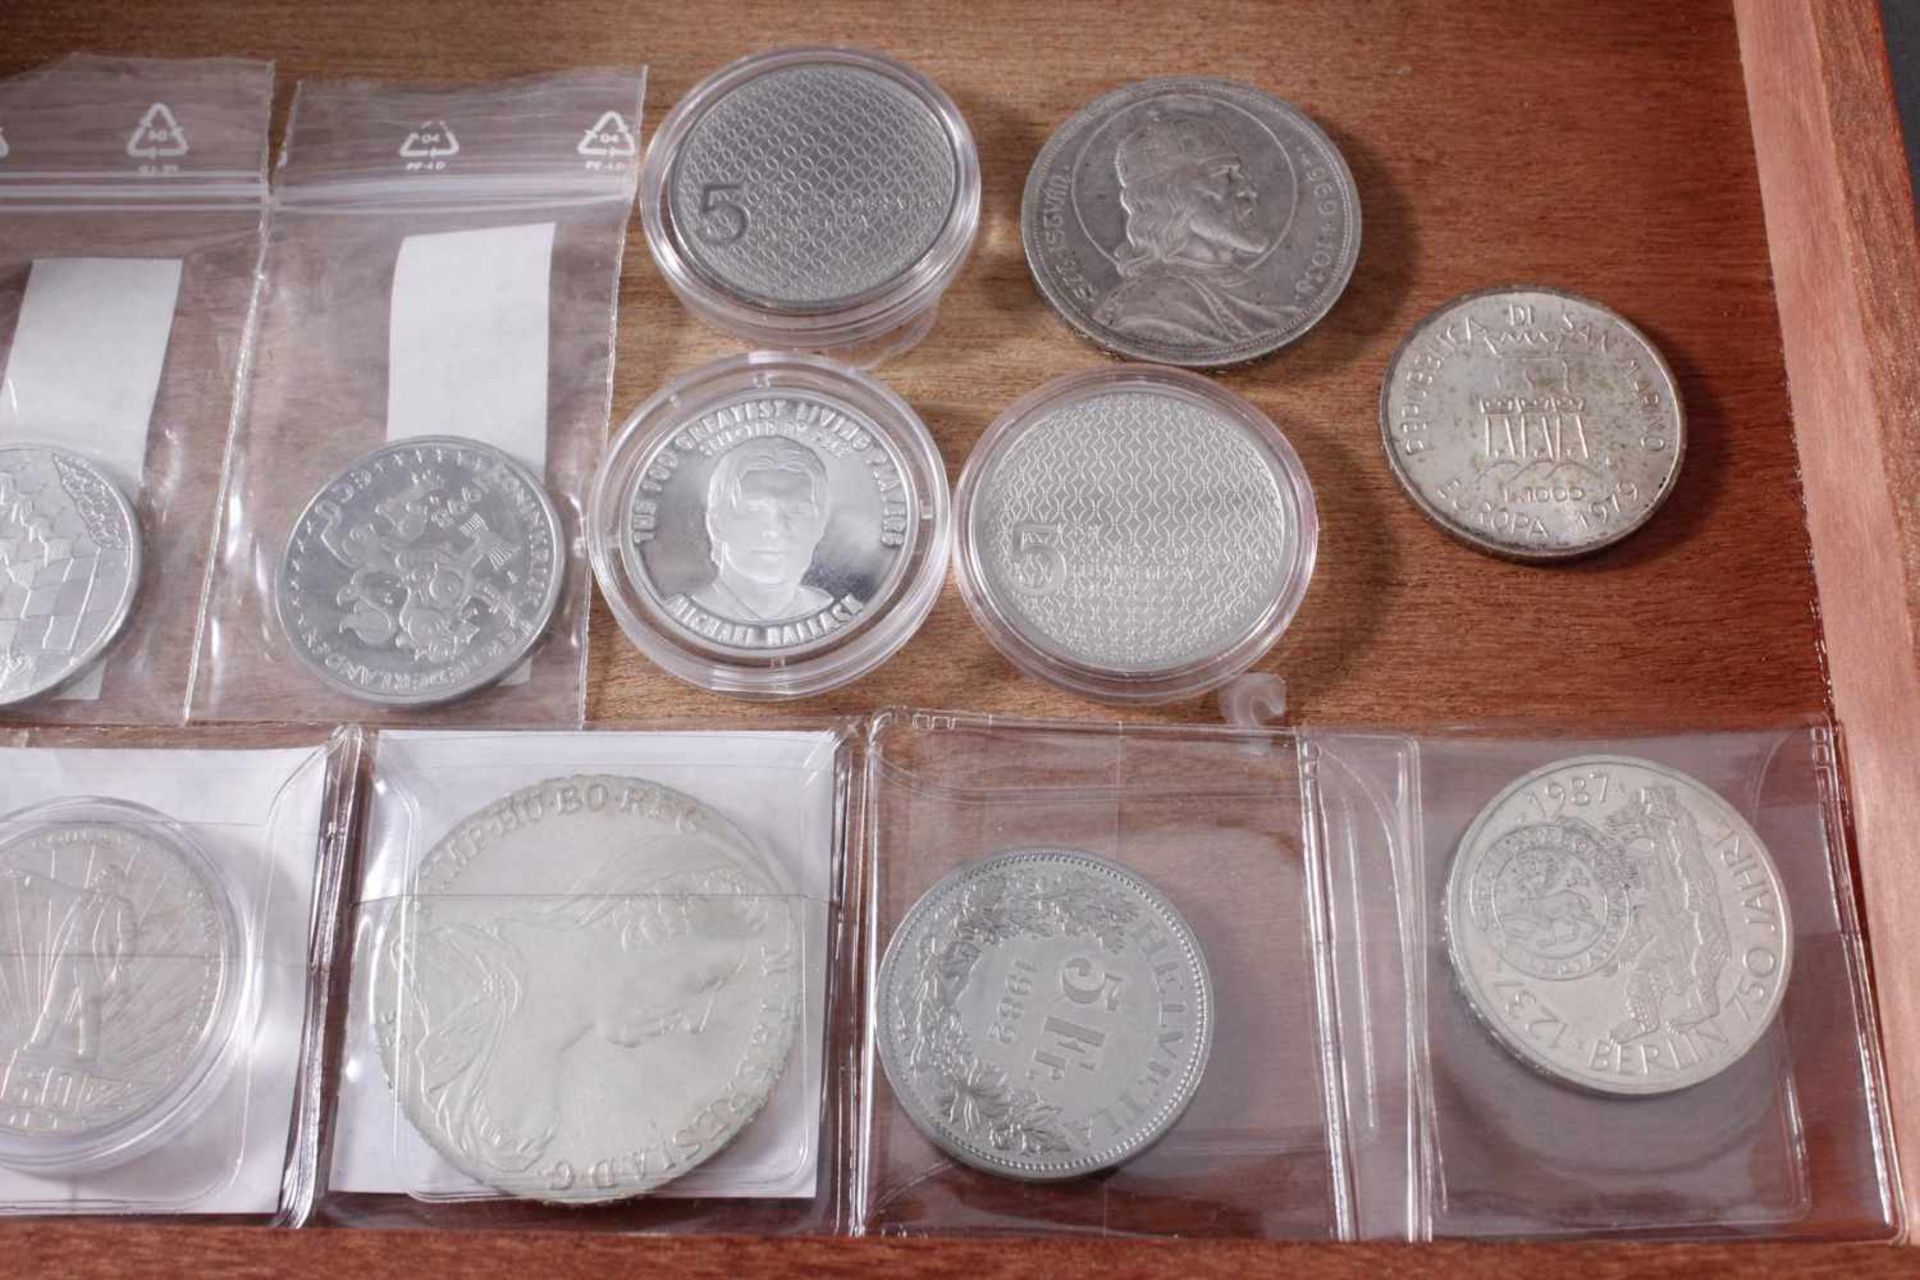 Sammlung Münzen und Medaillen1 1/2 Euro, 900er Silber, 22 g. 1 1/2 Euro Frankreich 2006, Silber - Bild 5 aus 5